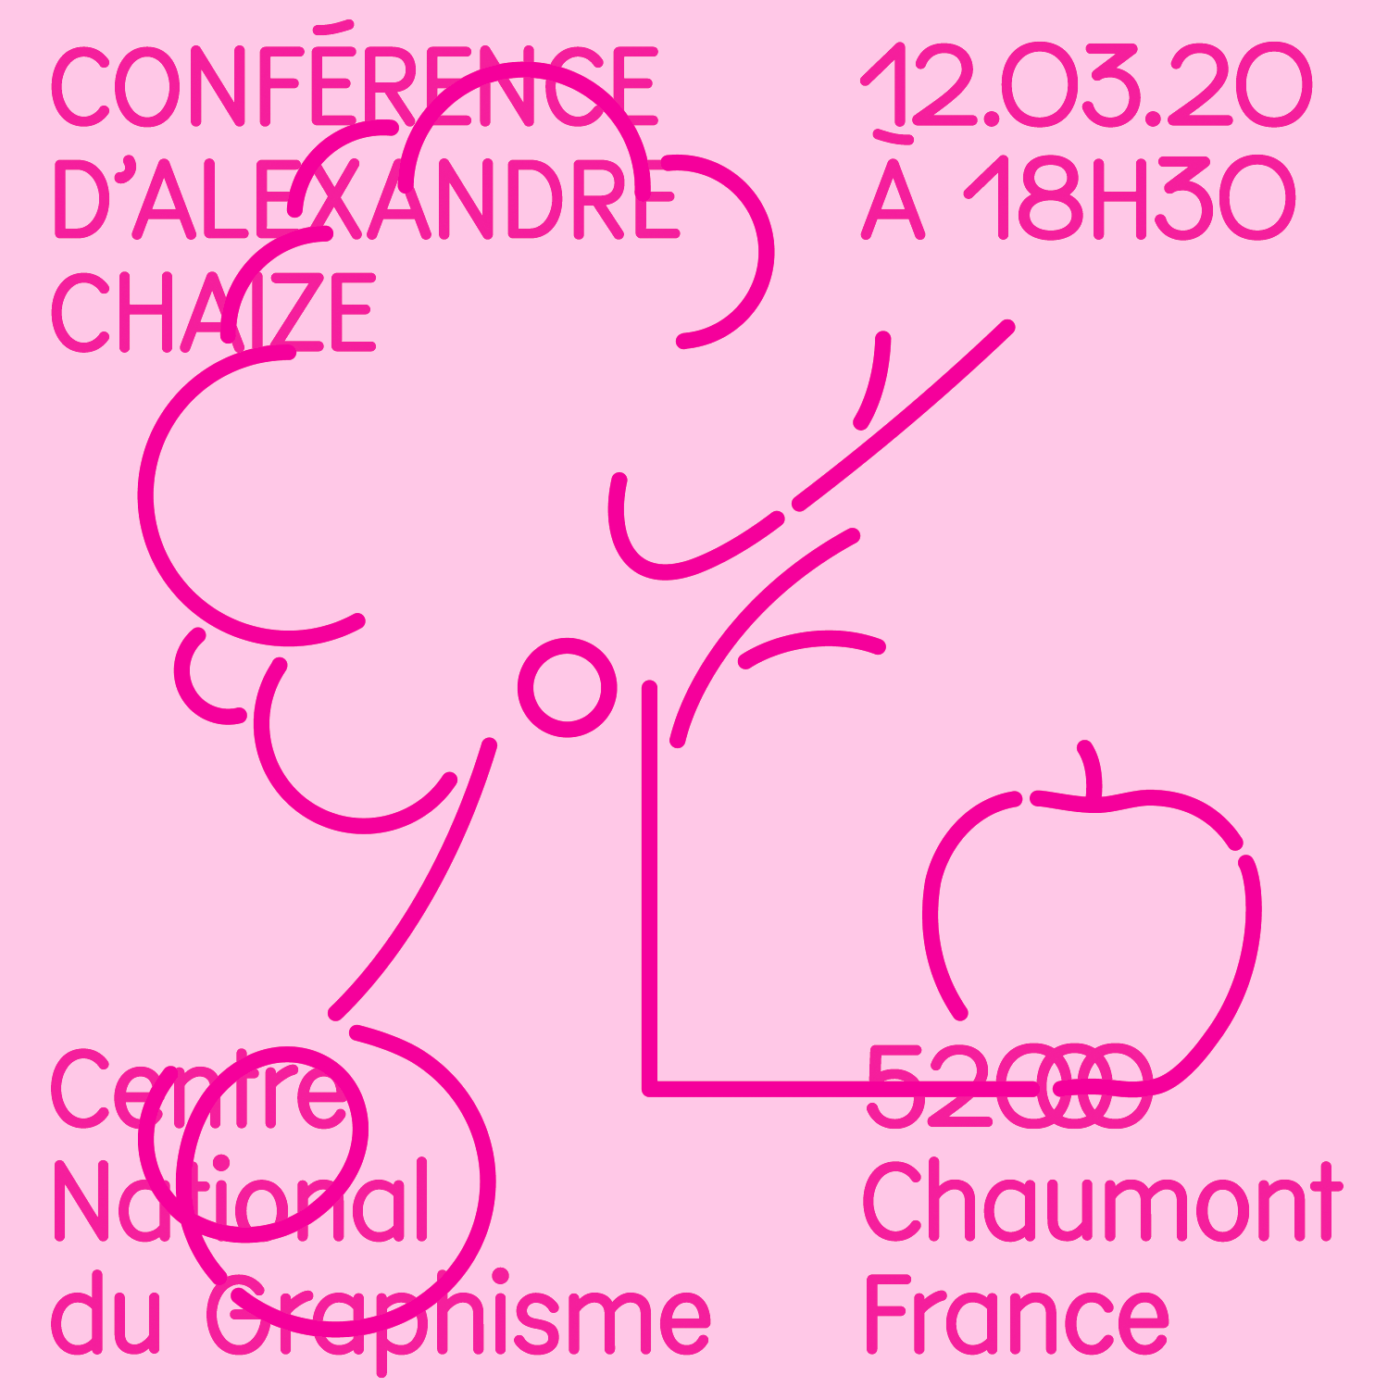 Visuel de la conférence d’Alexandre Chaize au Signe, Centre National du Graphisme à Chaumont